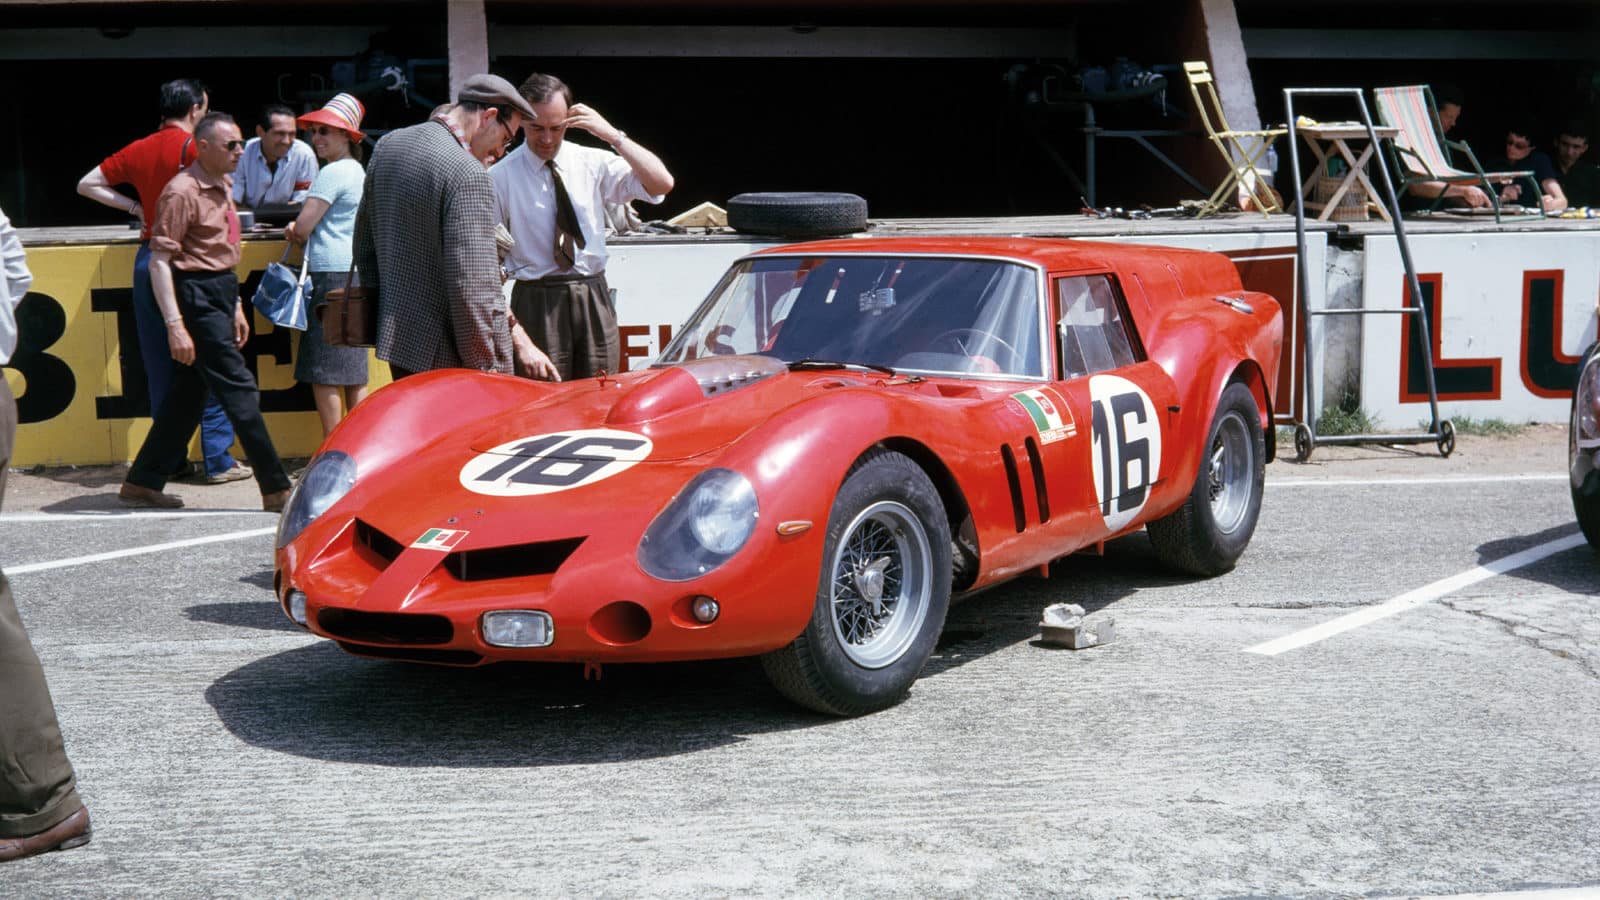 Ferrari 250 GTO breadvan at Le Mans in 1962